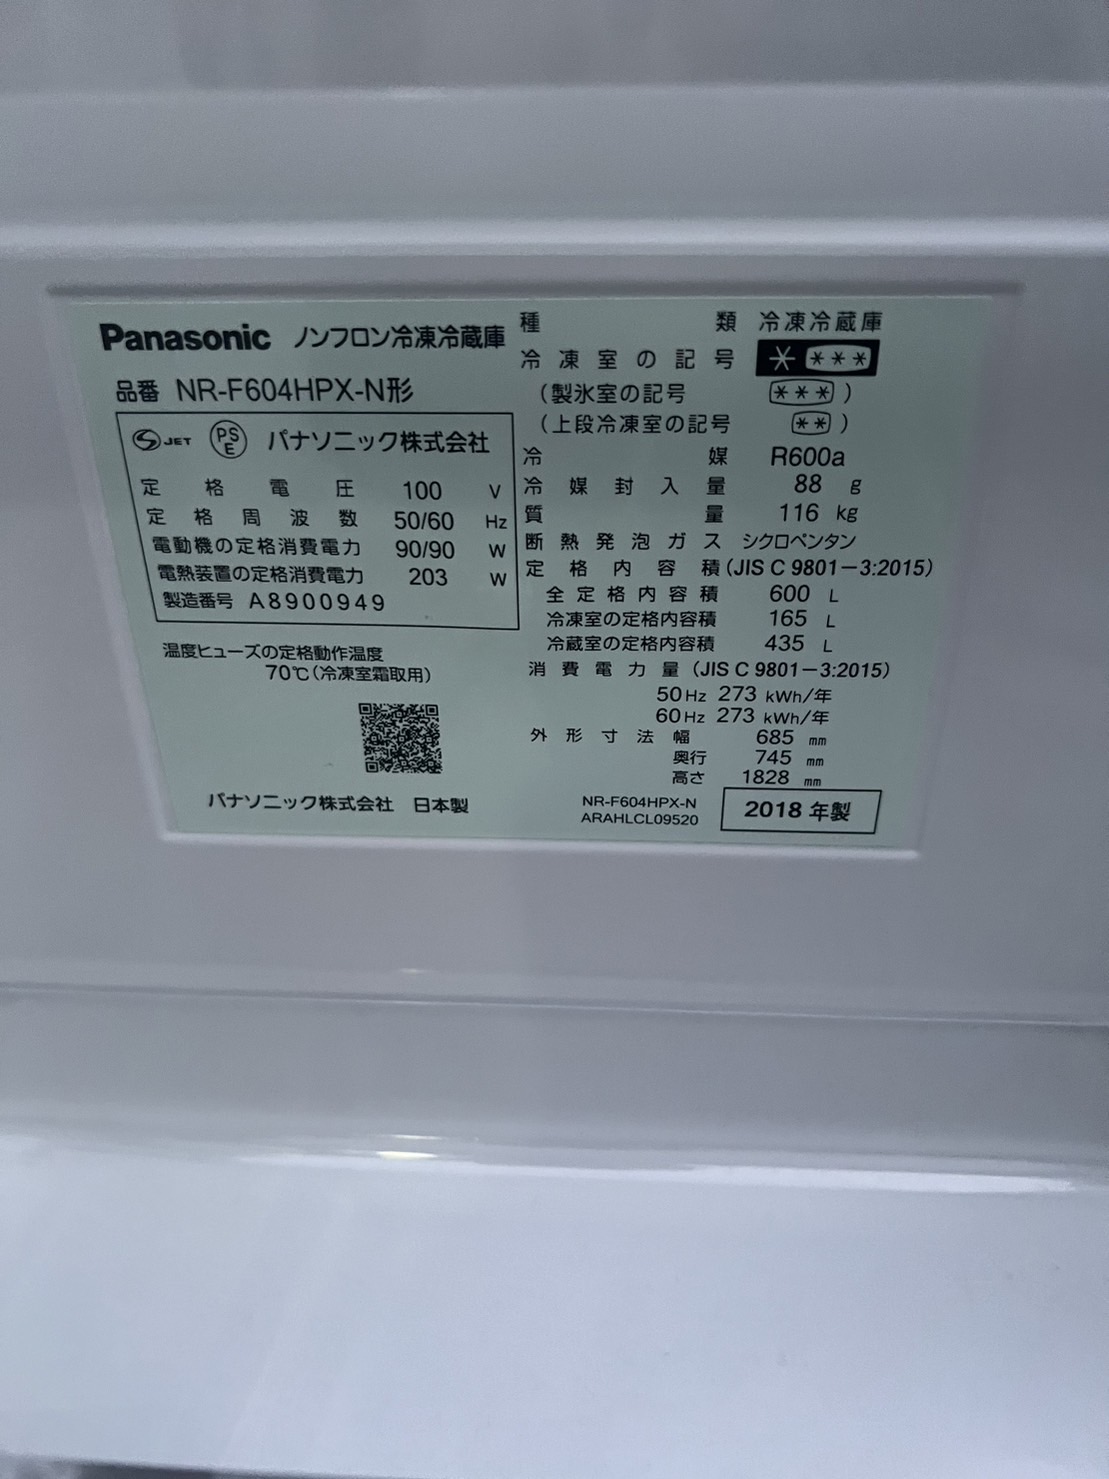 6ドア冷蔵庫 Panasonic NR-F604HPX-N買取、出張買取